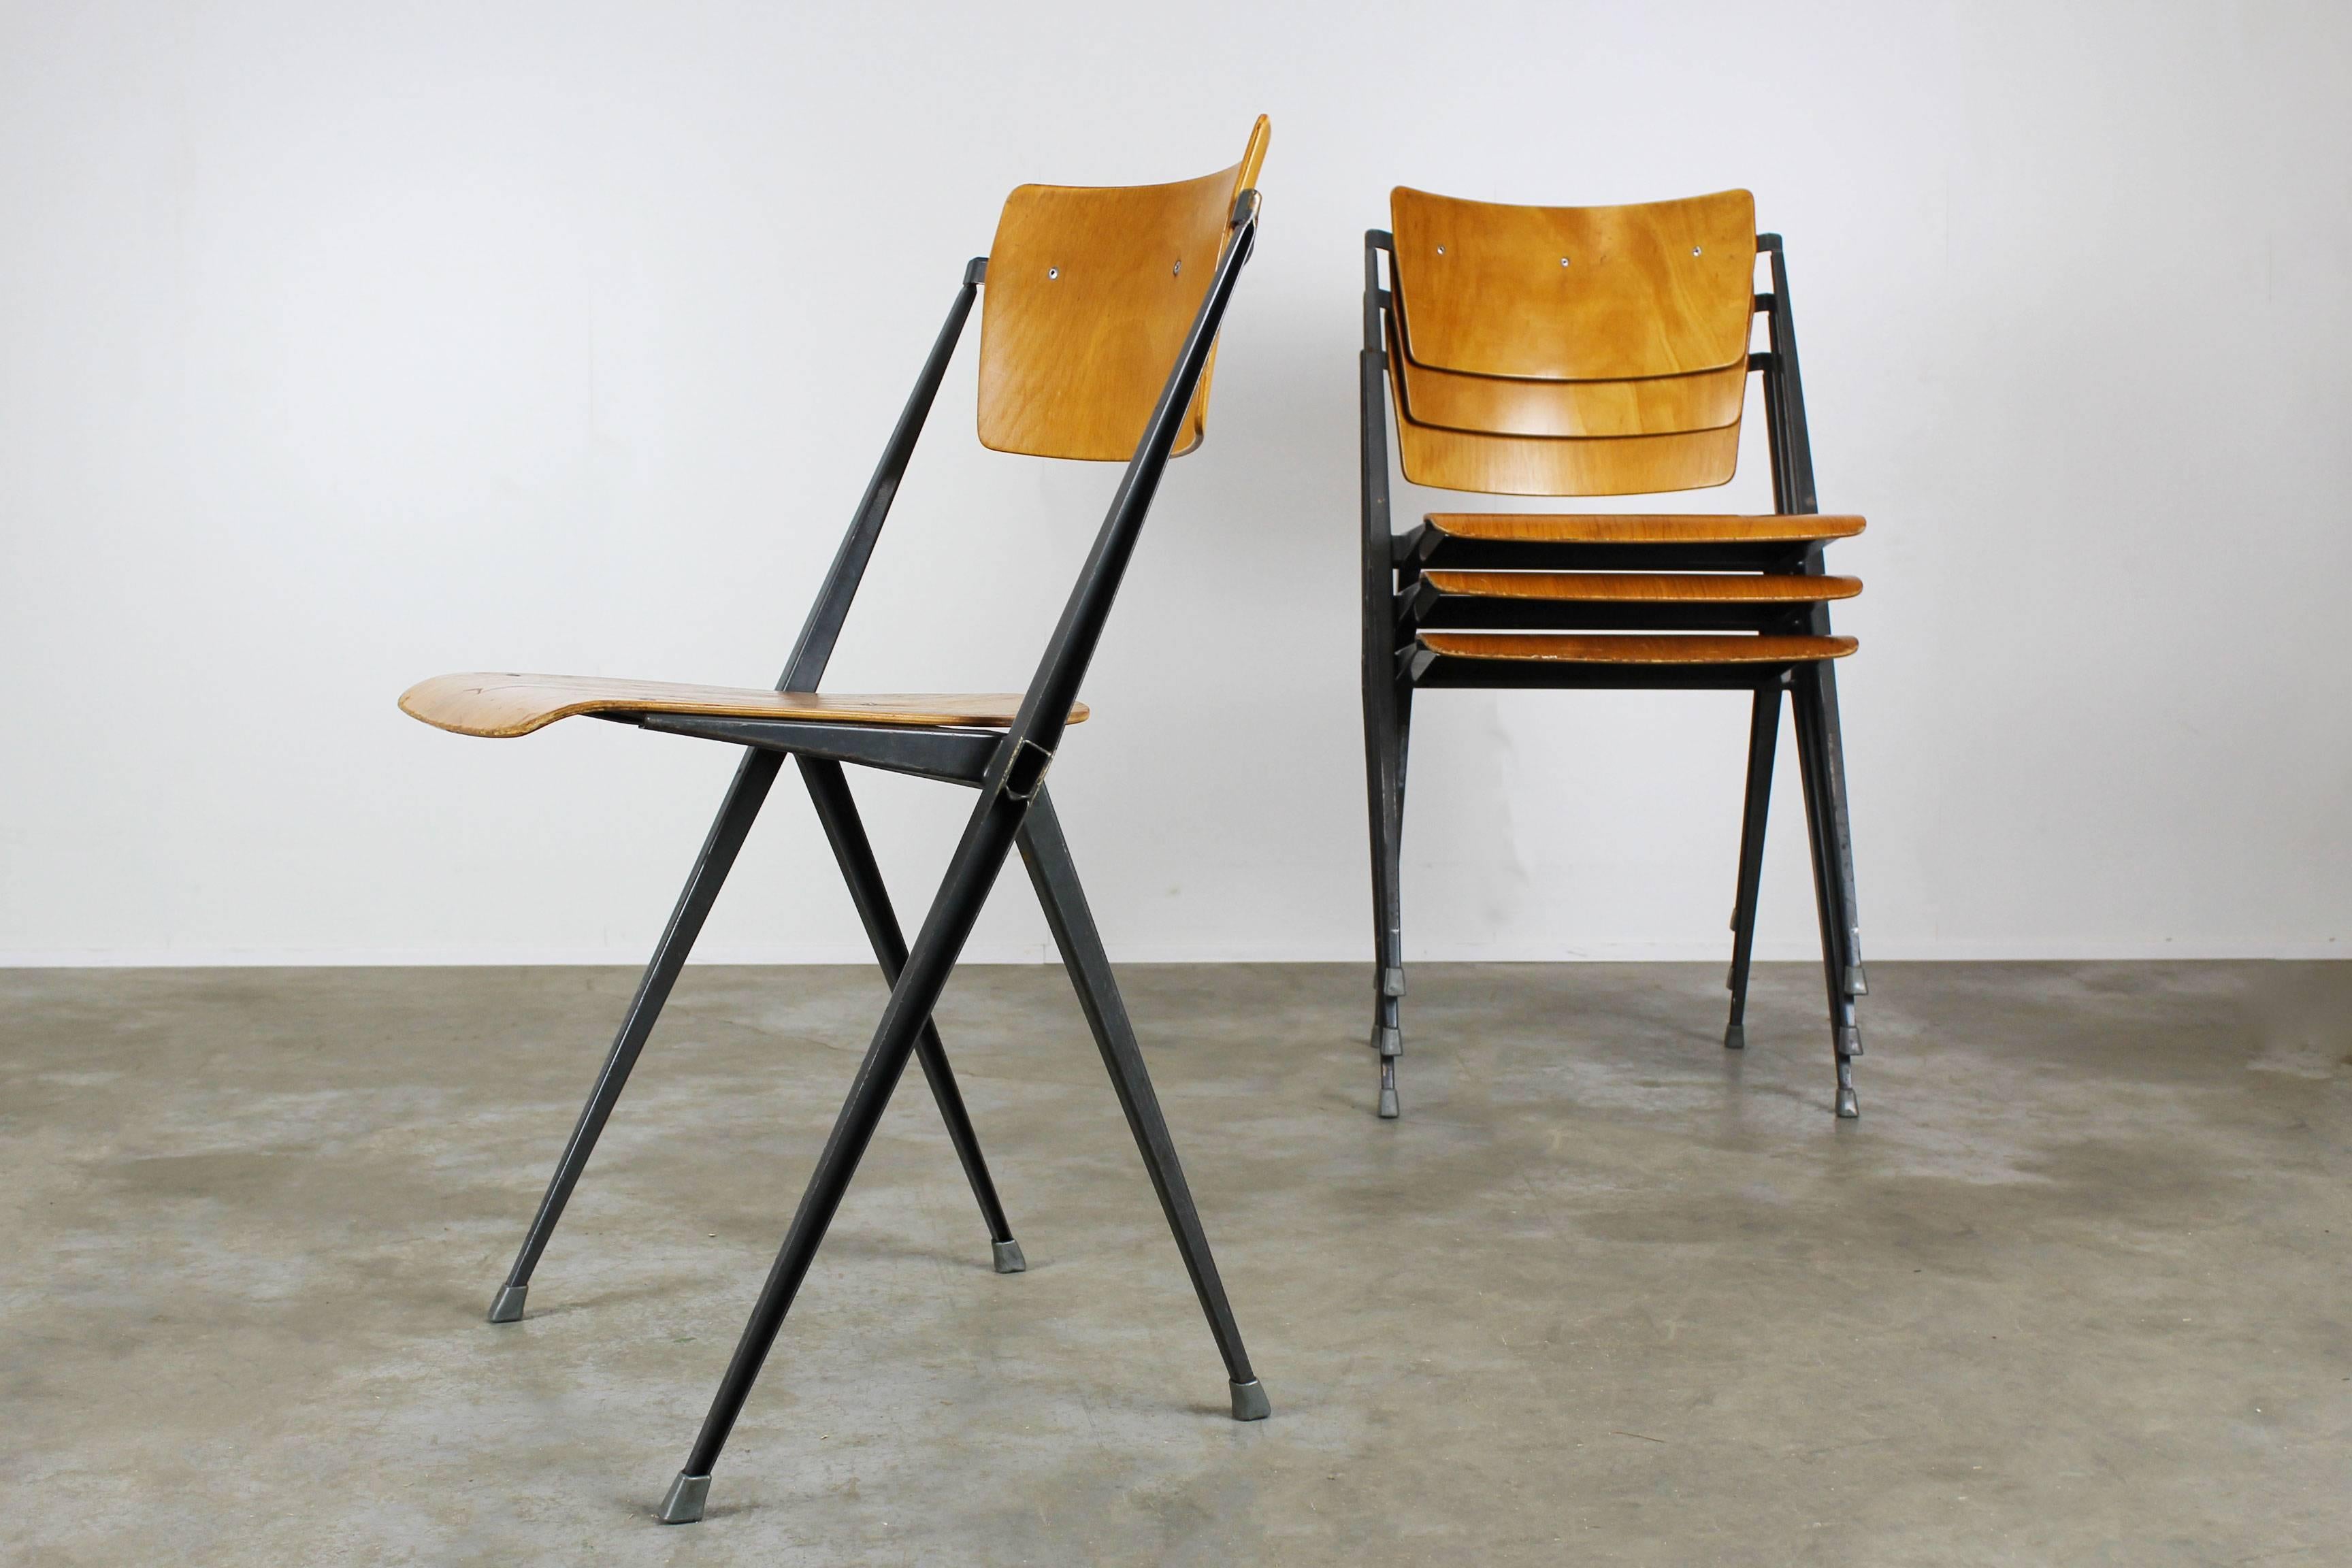 Ensemble de quatre célèbres chaises ''Pyramide'' Conçues par le designer néerlandais Wim Rietveld pour Ahrend de Cirkel en 1963. Ces chaises Pyramide ont un cadre de couleur Petrol gris/bleu et un siège/dossier en bois clair. Merveilleuse patine sur